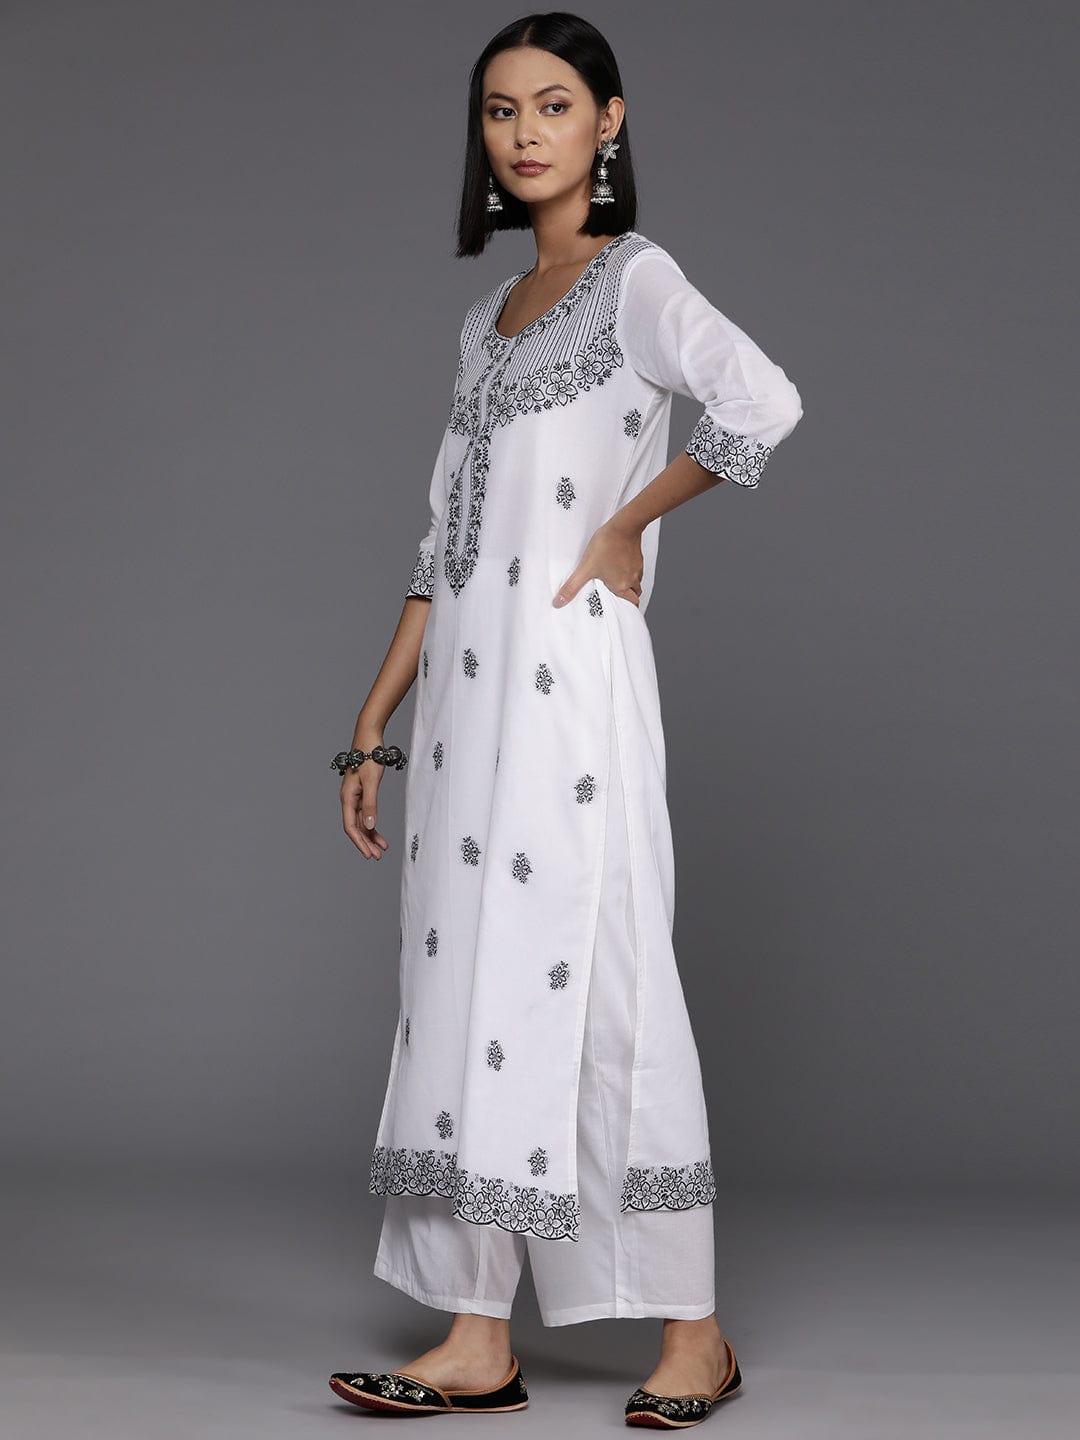 Varanga Women White & Black Woven Design Straight Kurta Paired With Bottom And Dupatta